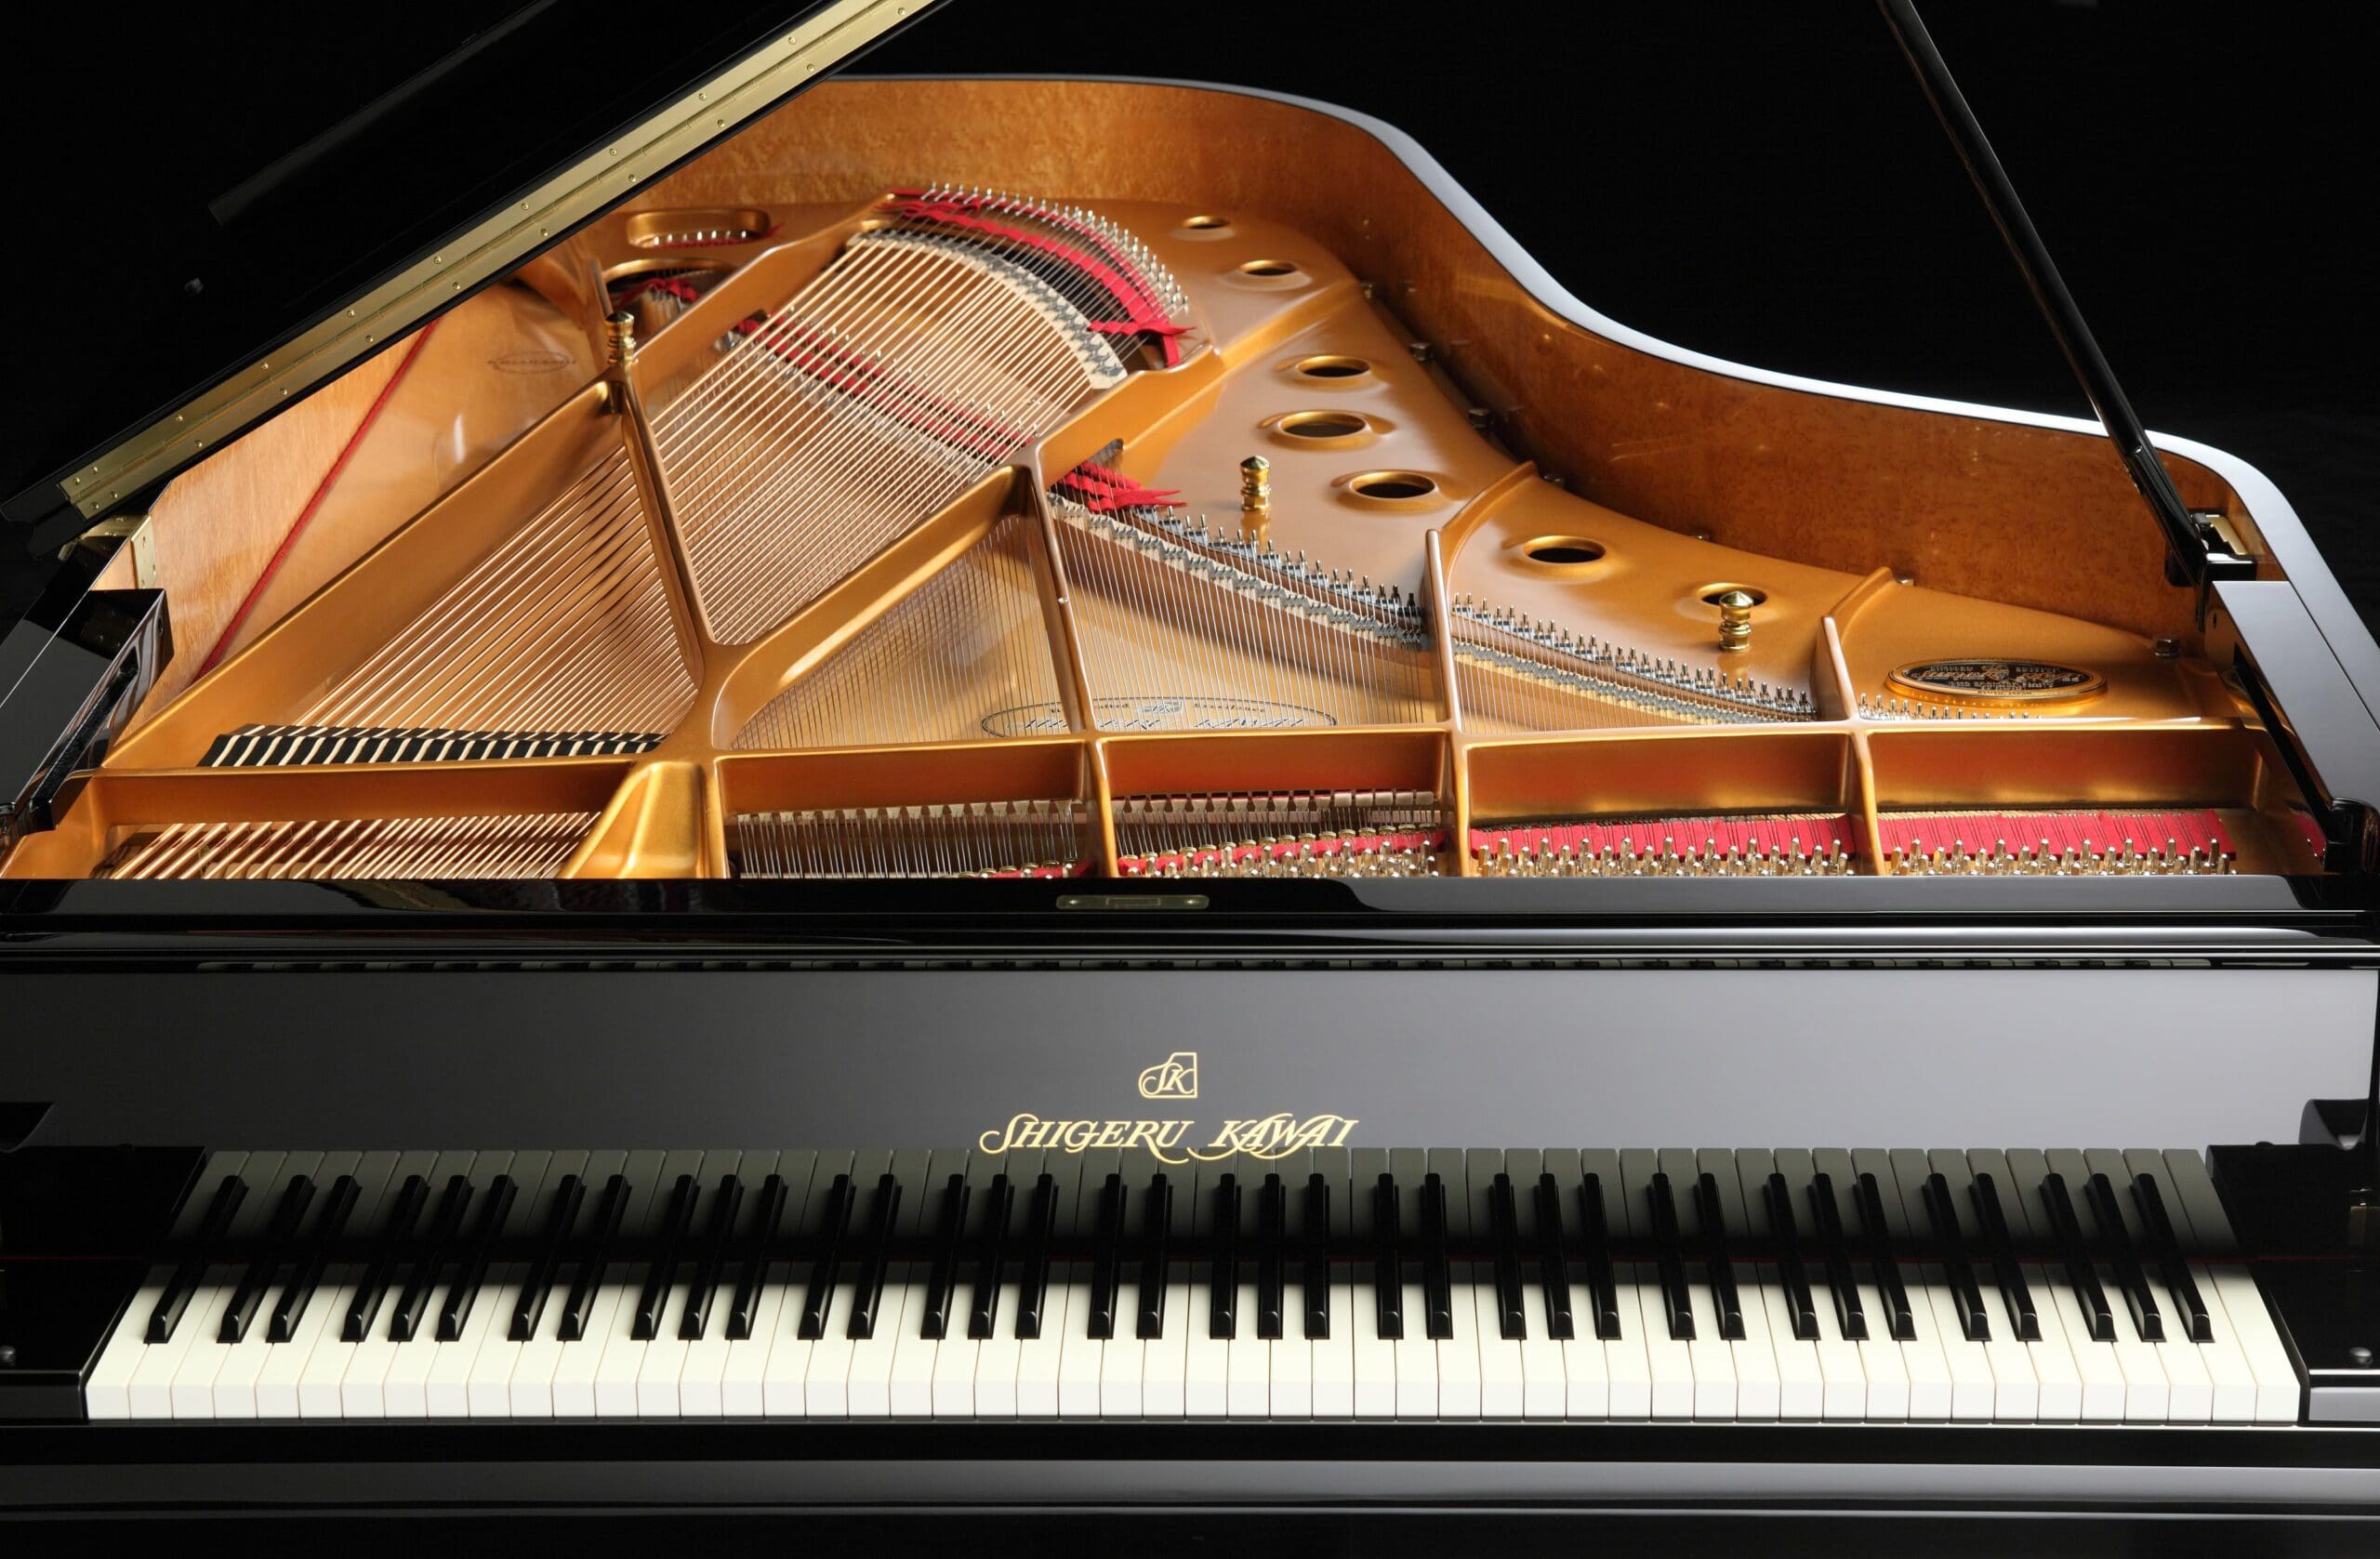 Shigeru Kawai SK7 available to purchase from Richard Lawson Pianos